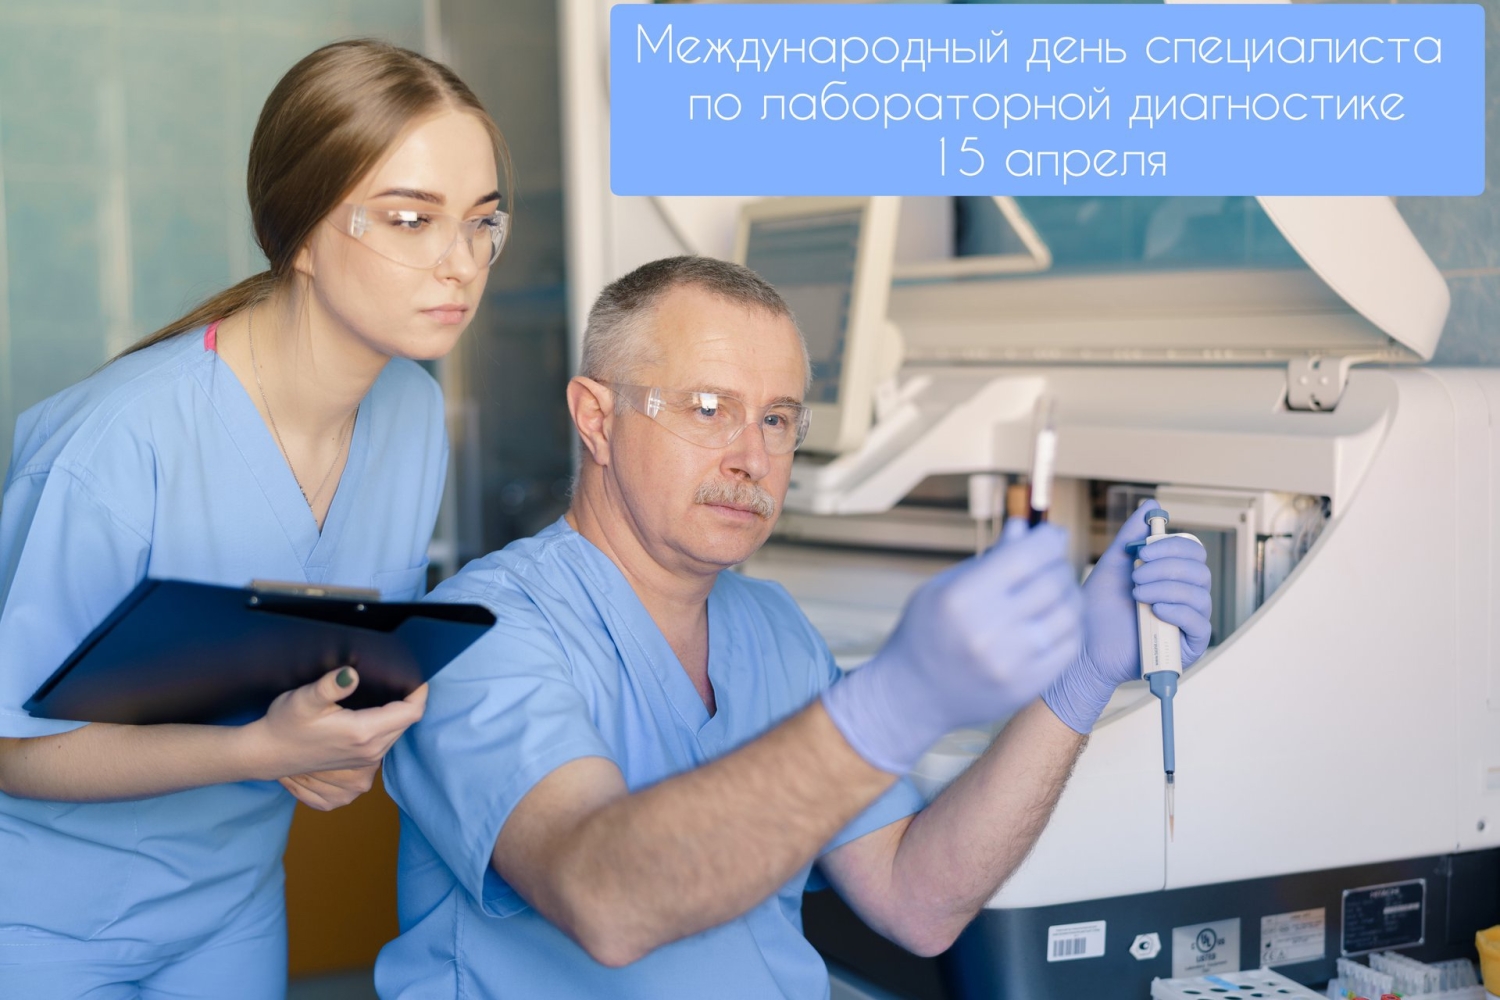 15 апреля - Международный день специалистов по лабораторной диагностике